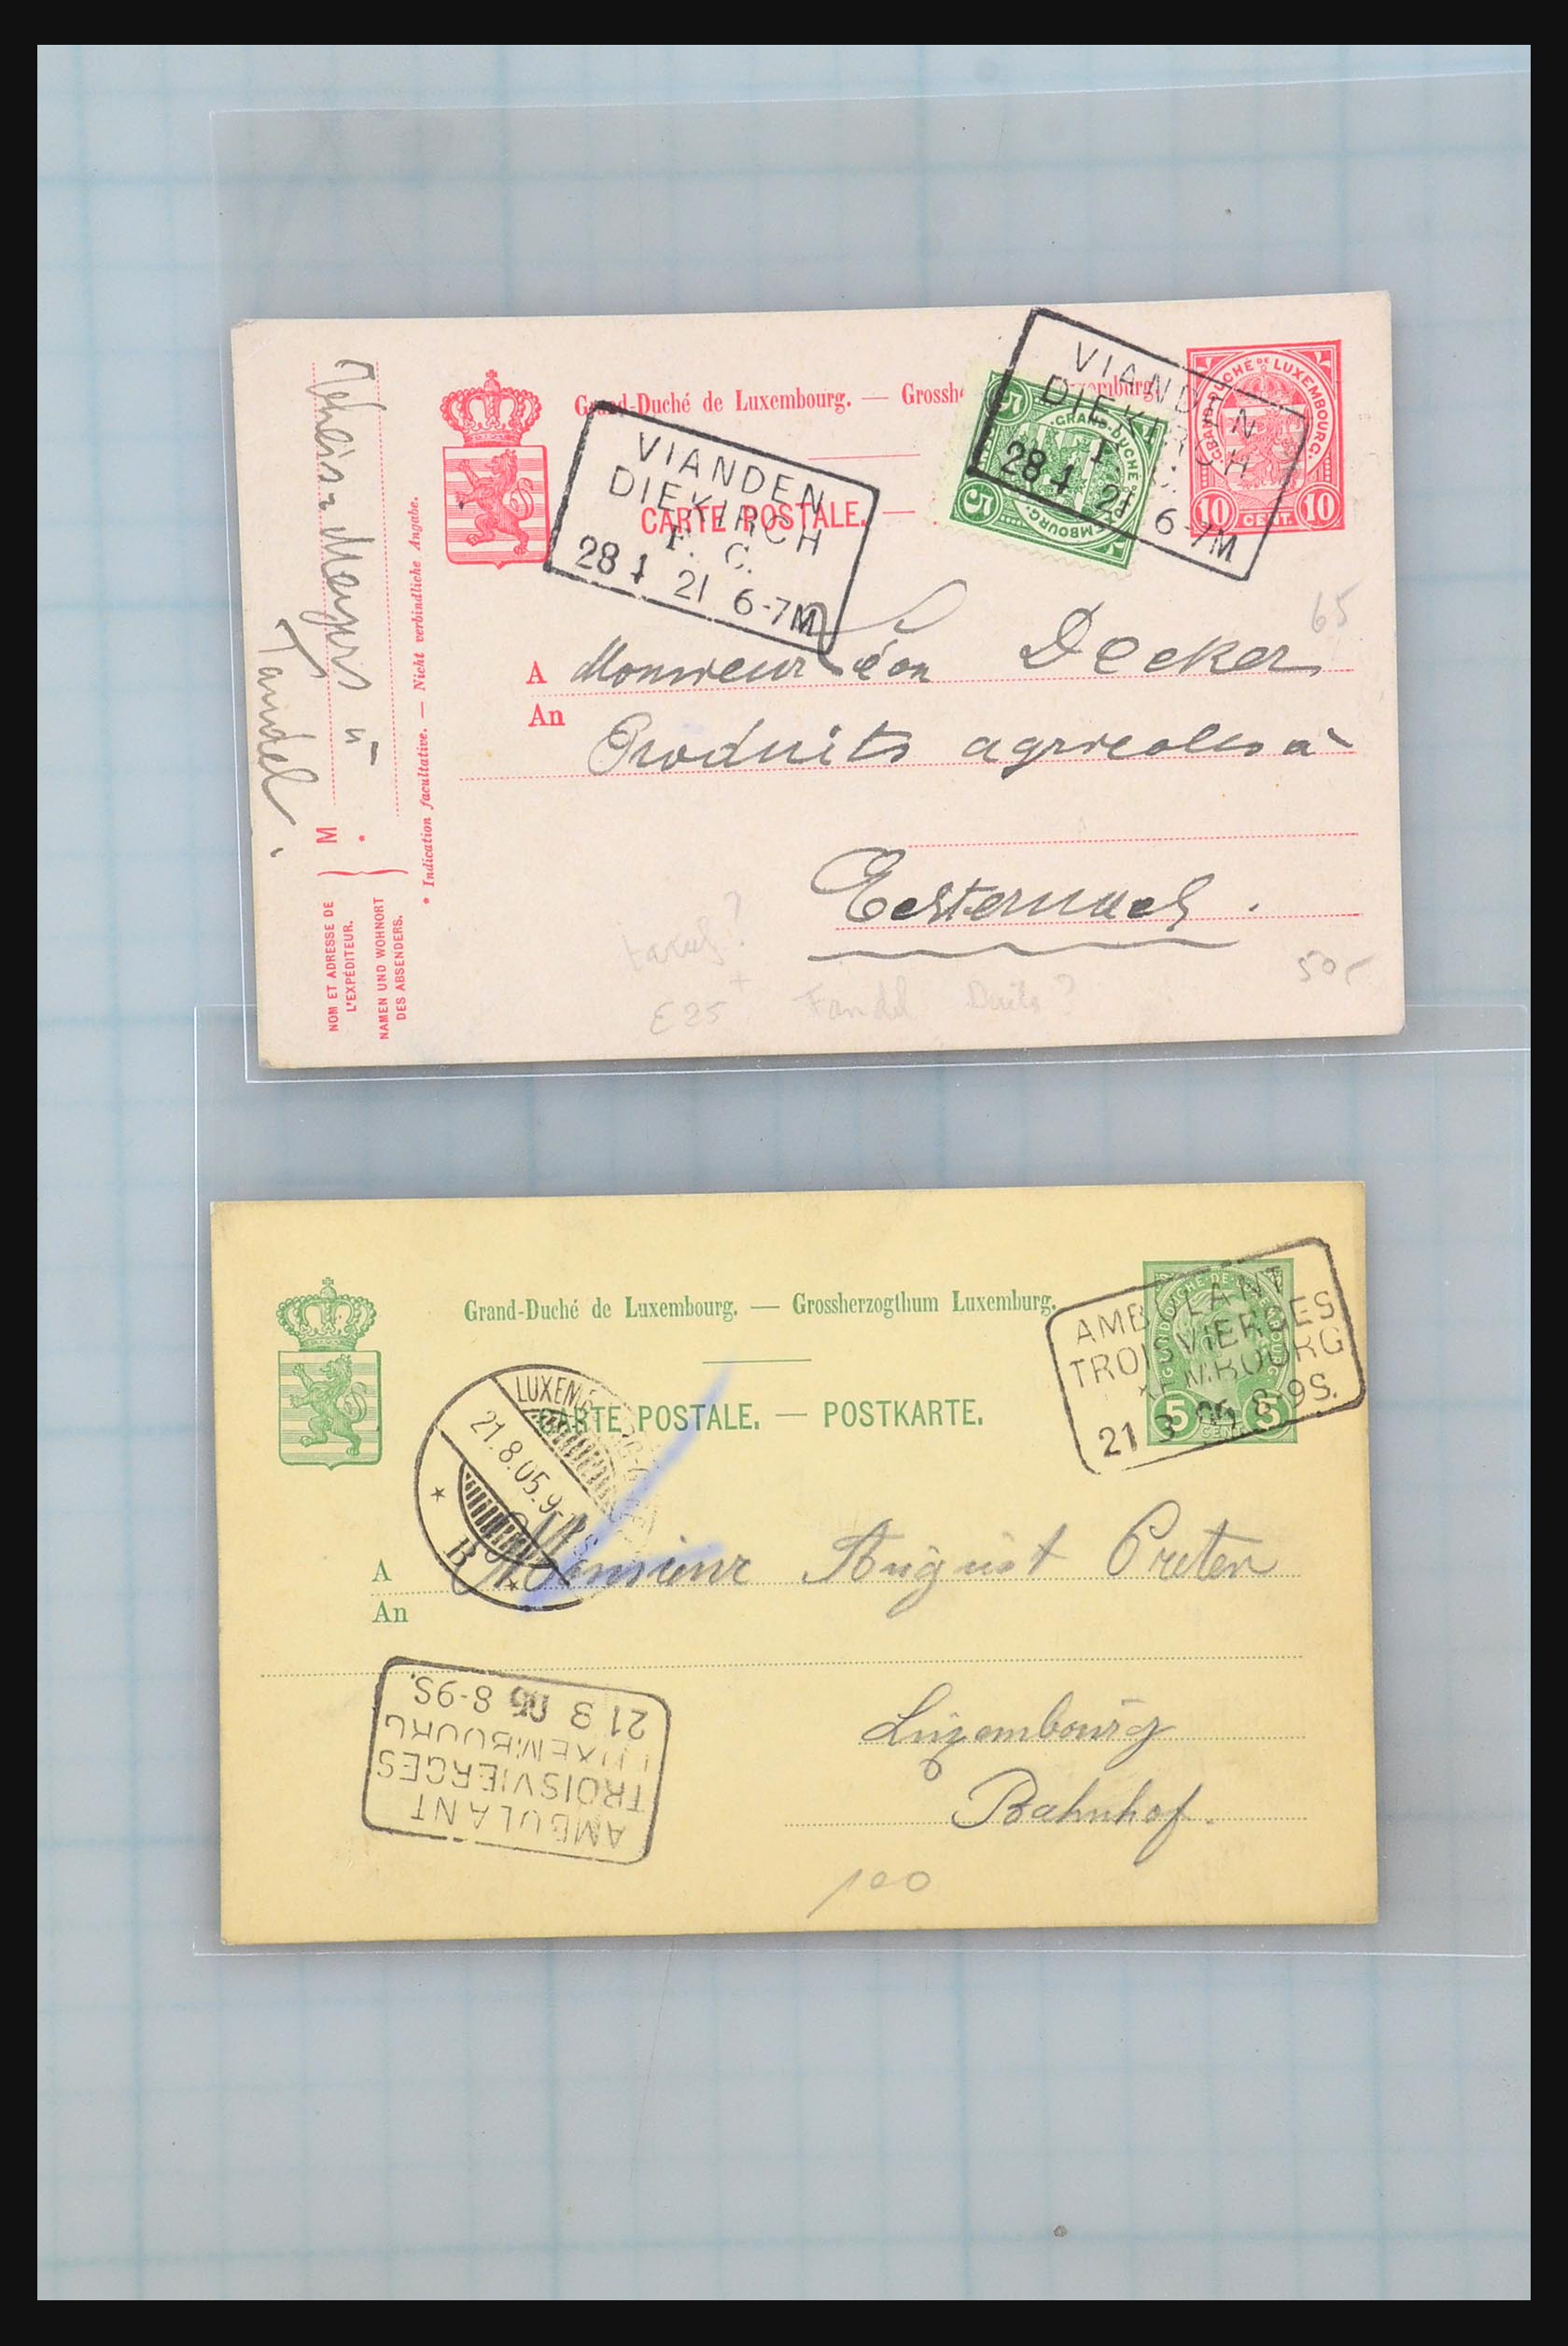 31358 051 - 31358 Portugal/Luxemburg/Griekenland brieven 1880-1960.